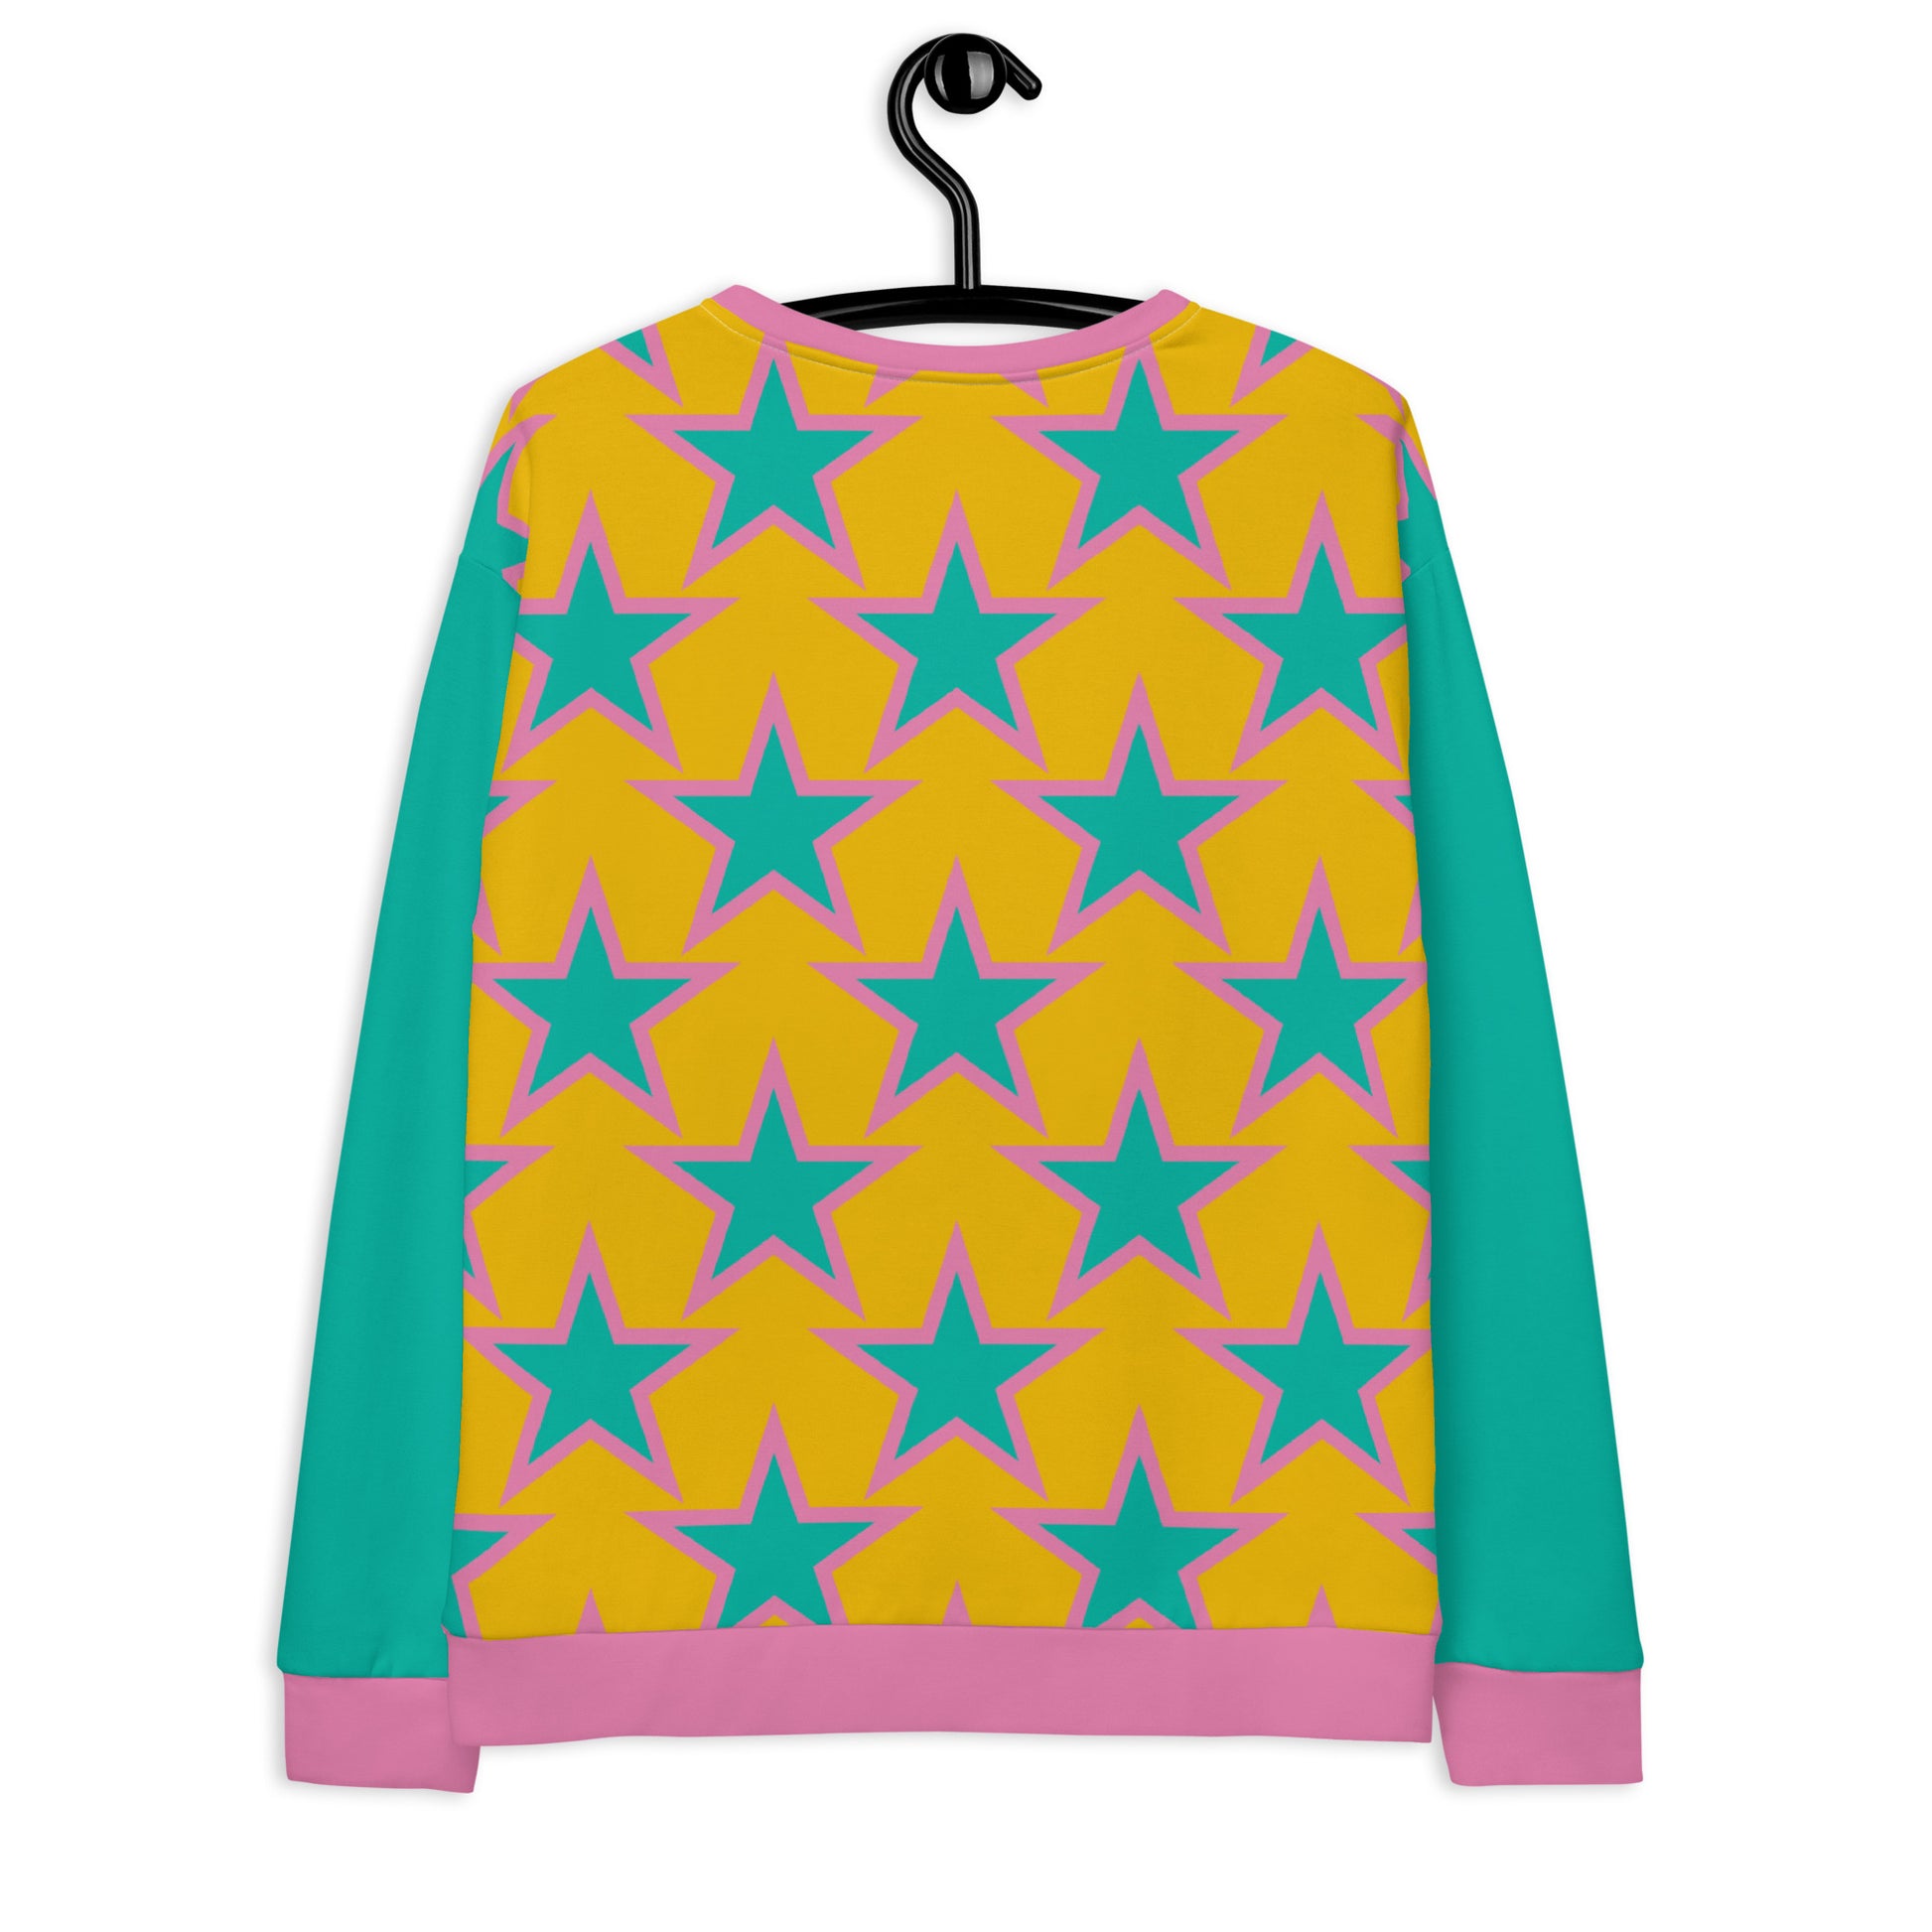 ELLIE STAR yellow - Unisex Sweatshirt